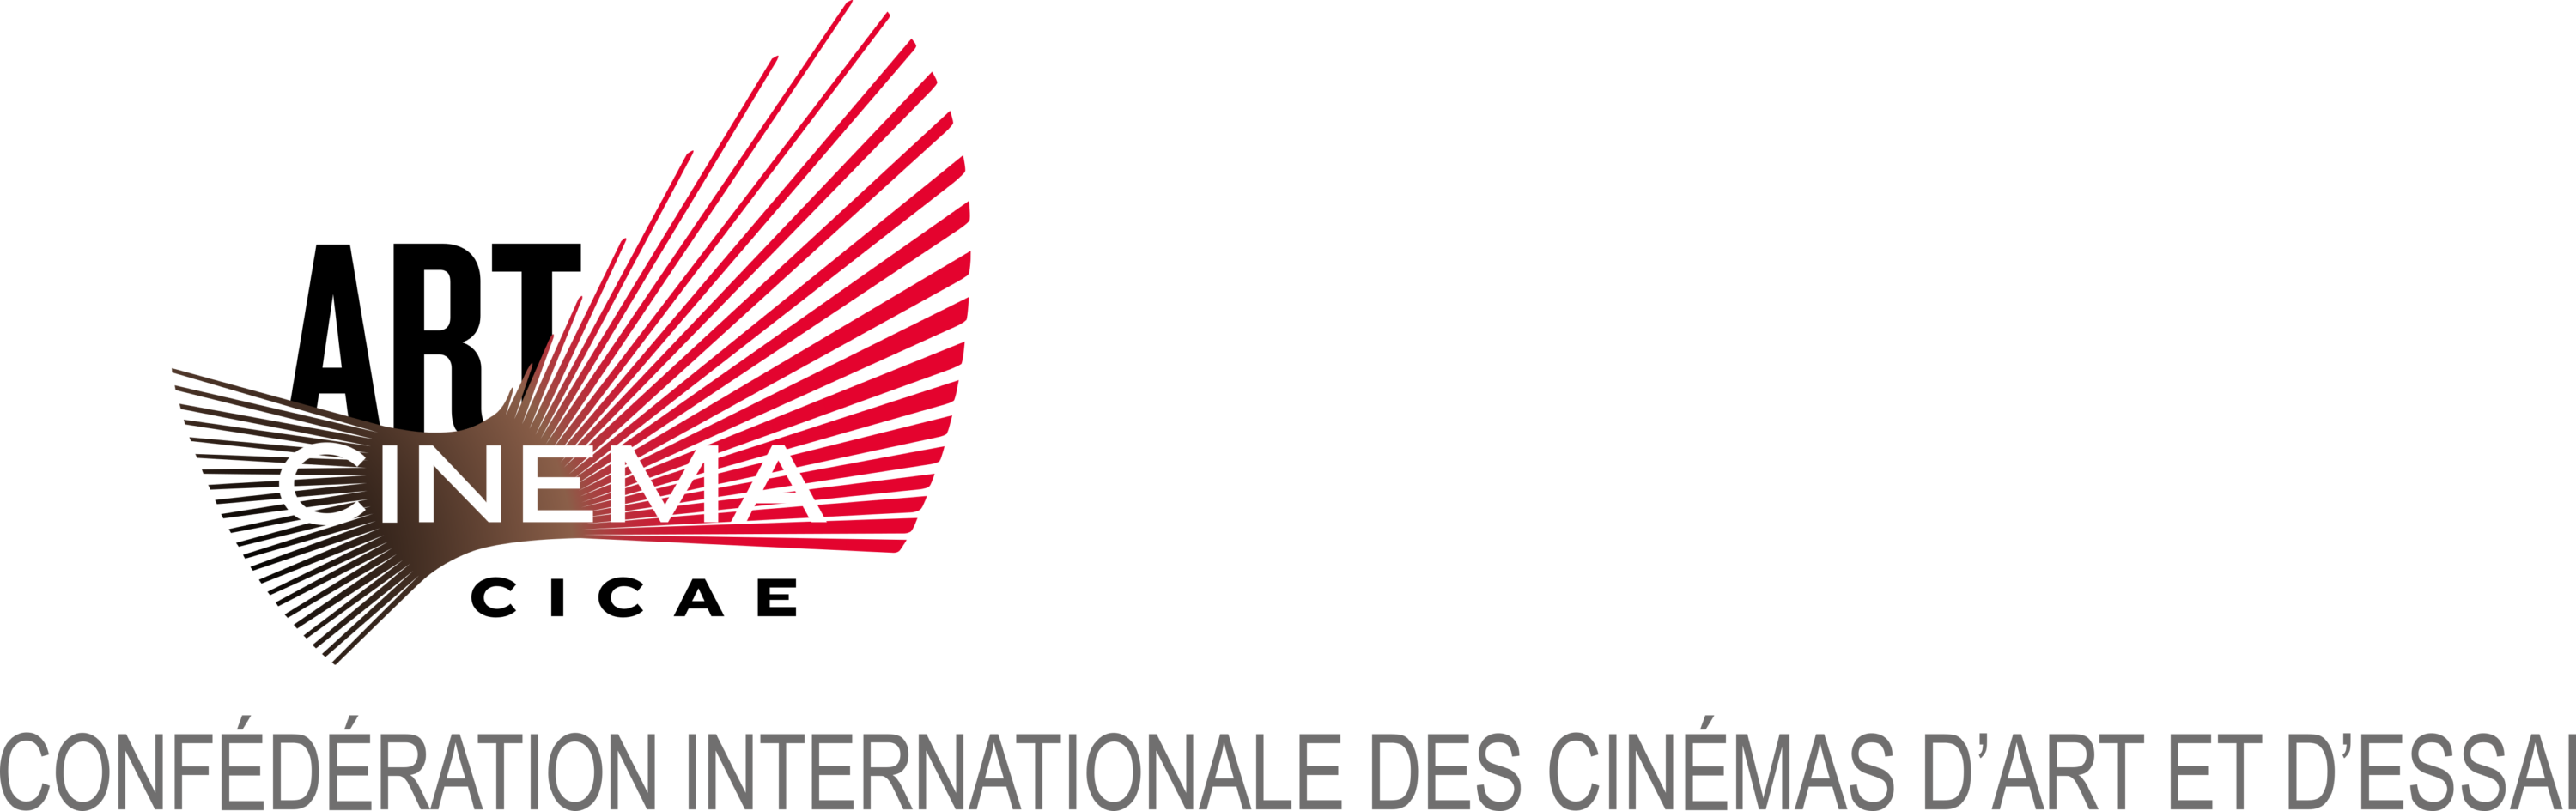 International Confederation of Art Cinemas (CICAE) Logo